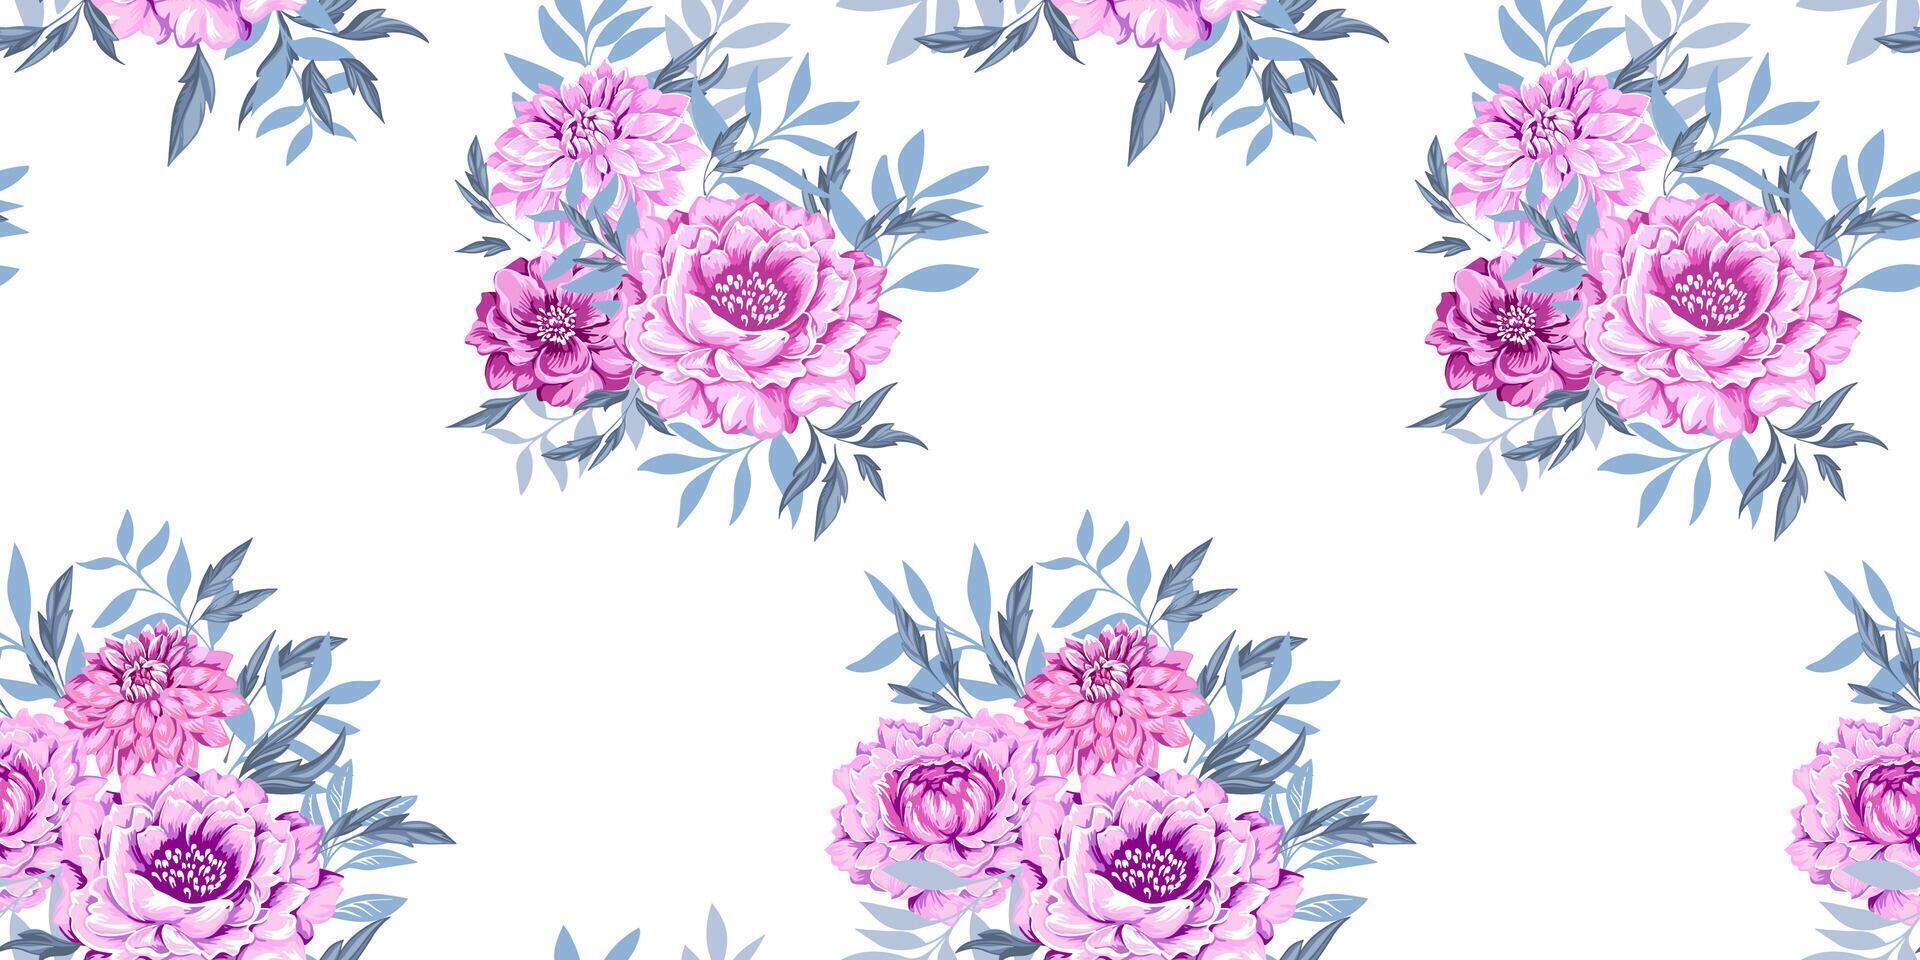 konstnärlig abstrakt buketter blommor pioner, georginer med grenar löv och silhuetter leafs på vit bakgrund. försiktigt skön stiliserade rosa blommig sömlös mönster. vektor dragen illustration